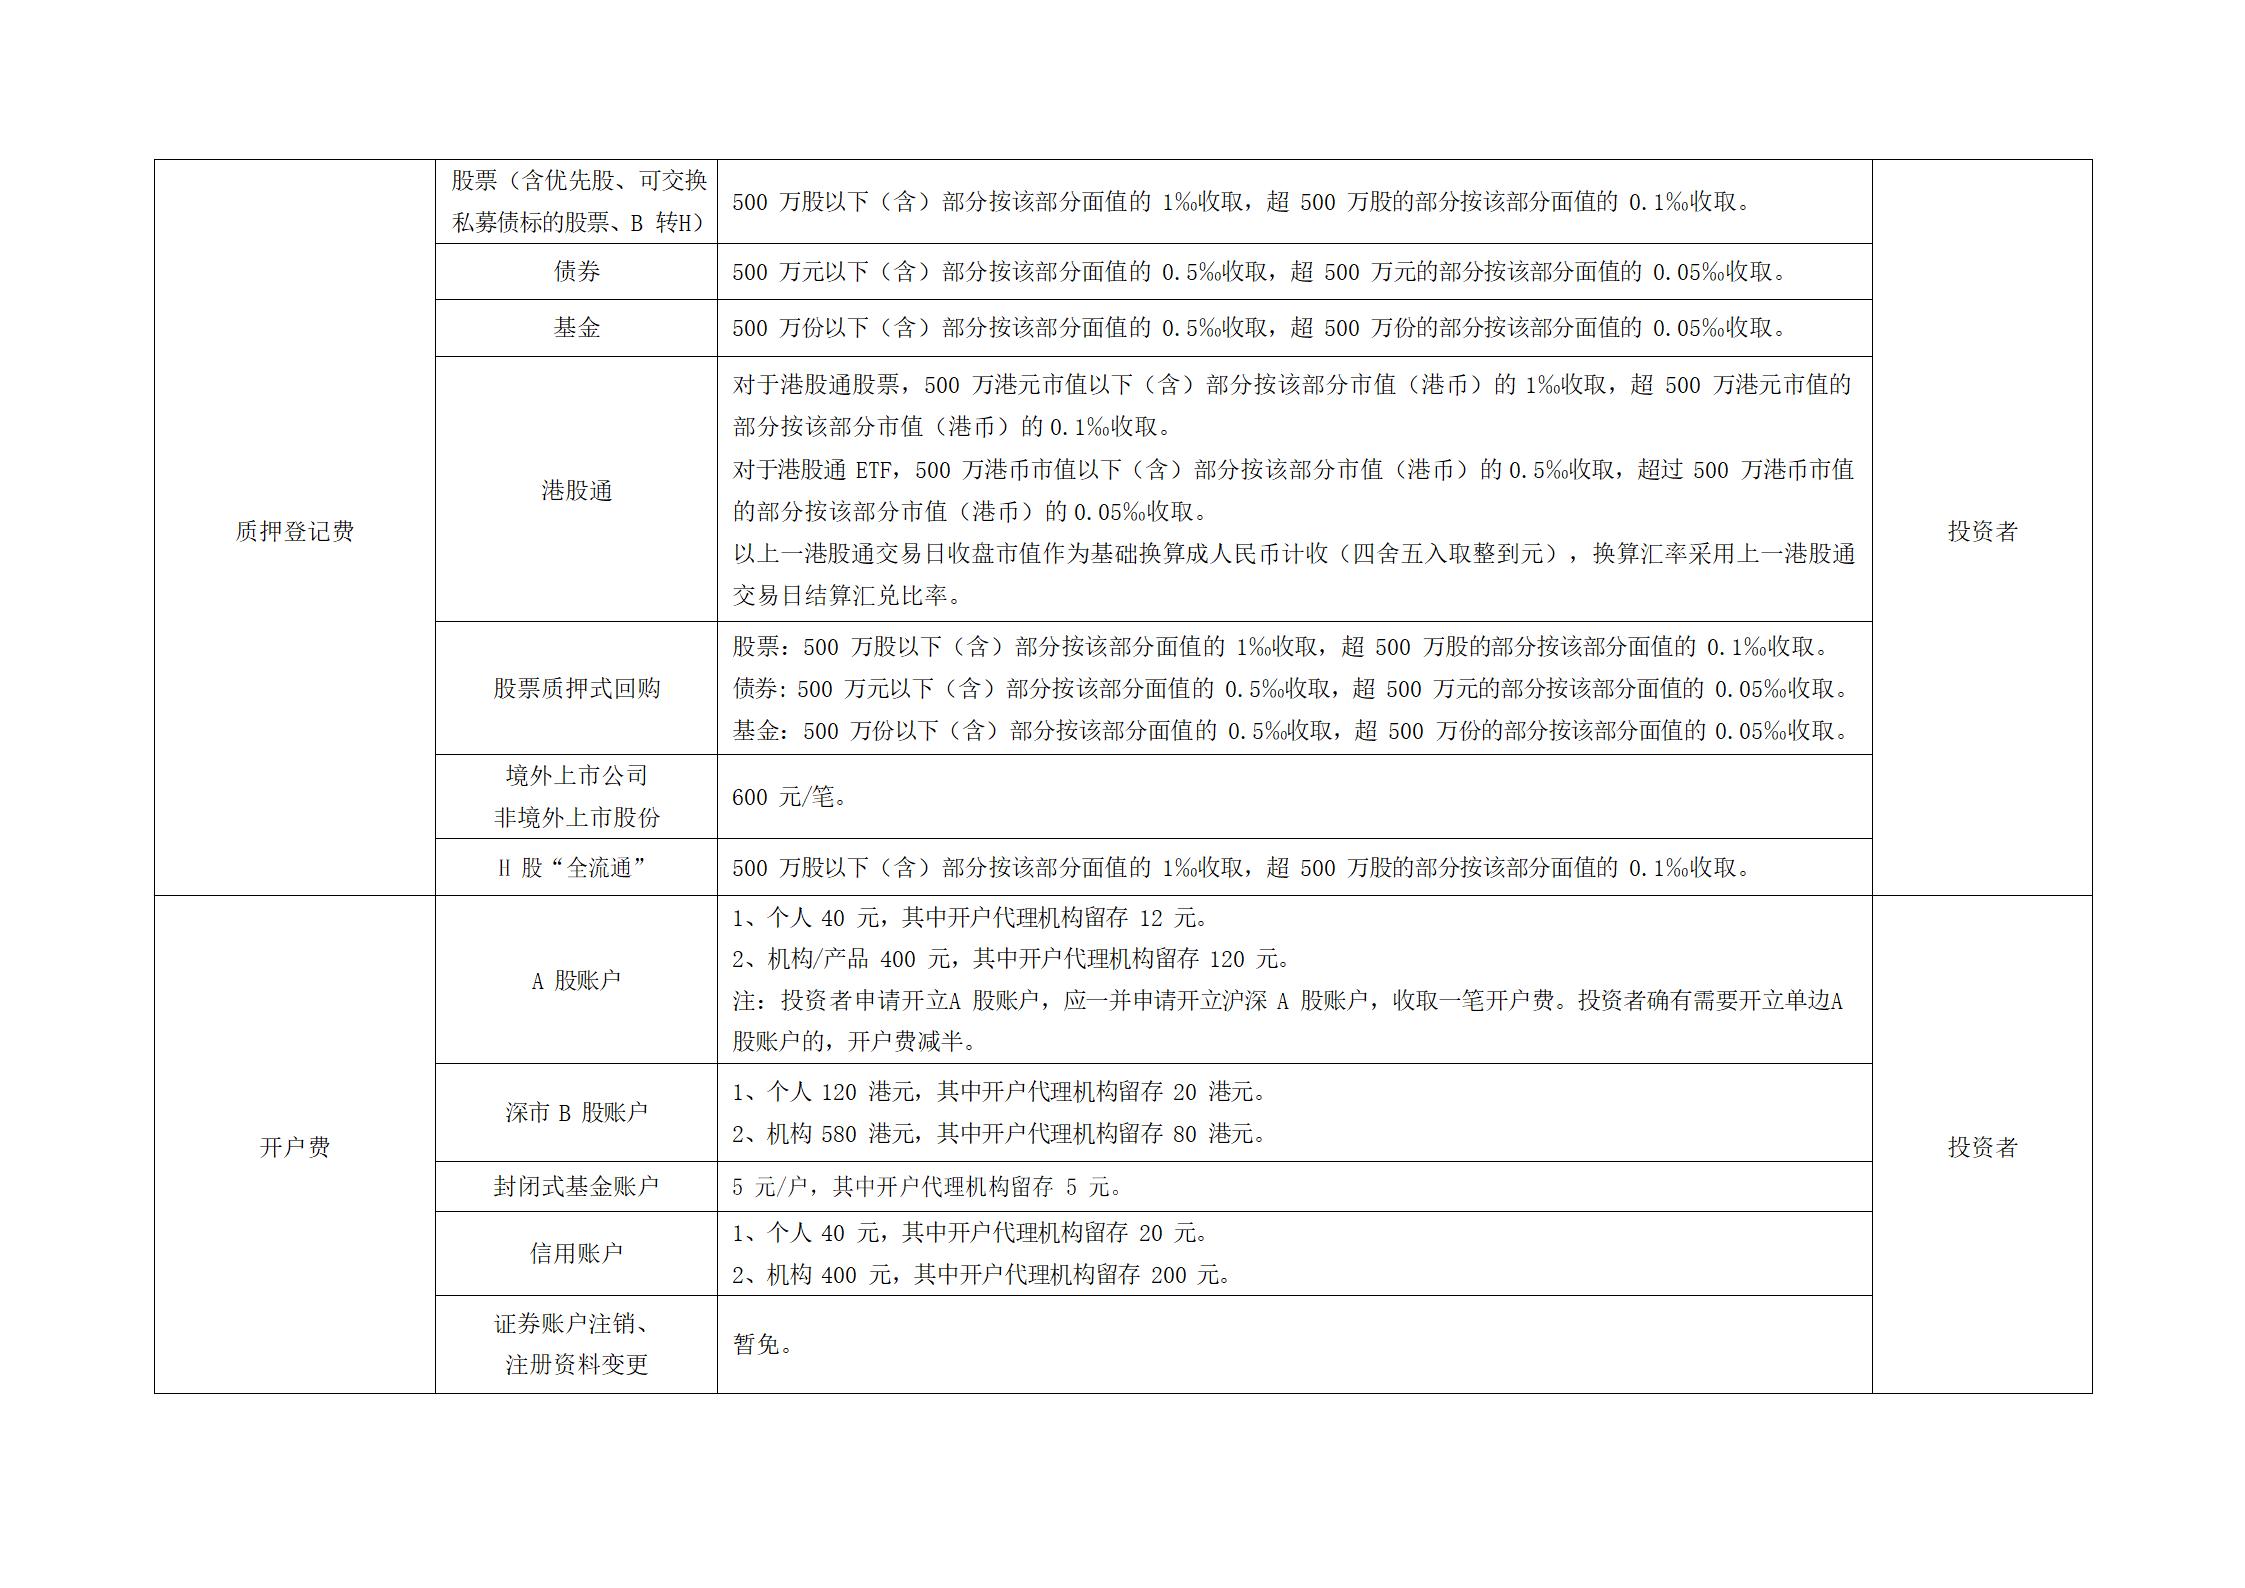 深圳市场证券登记结算业务收费及代收税费一览表 (1)_05.jpg